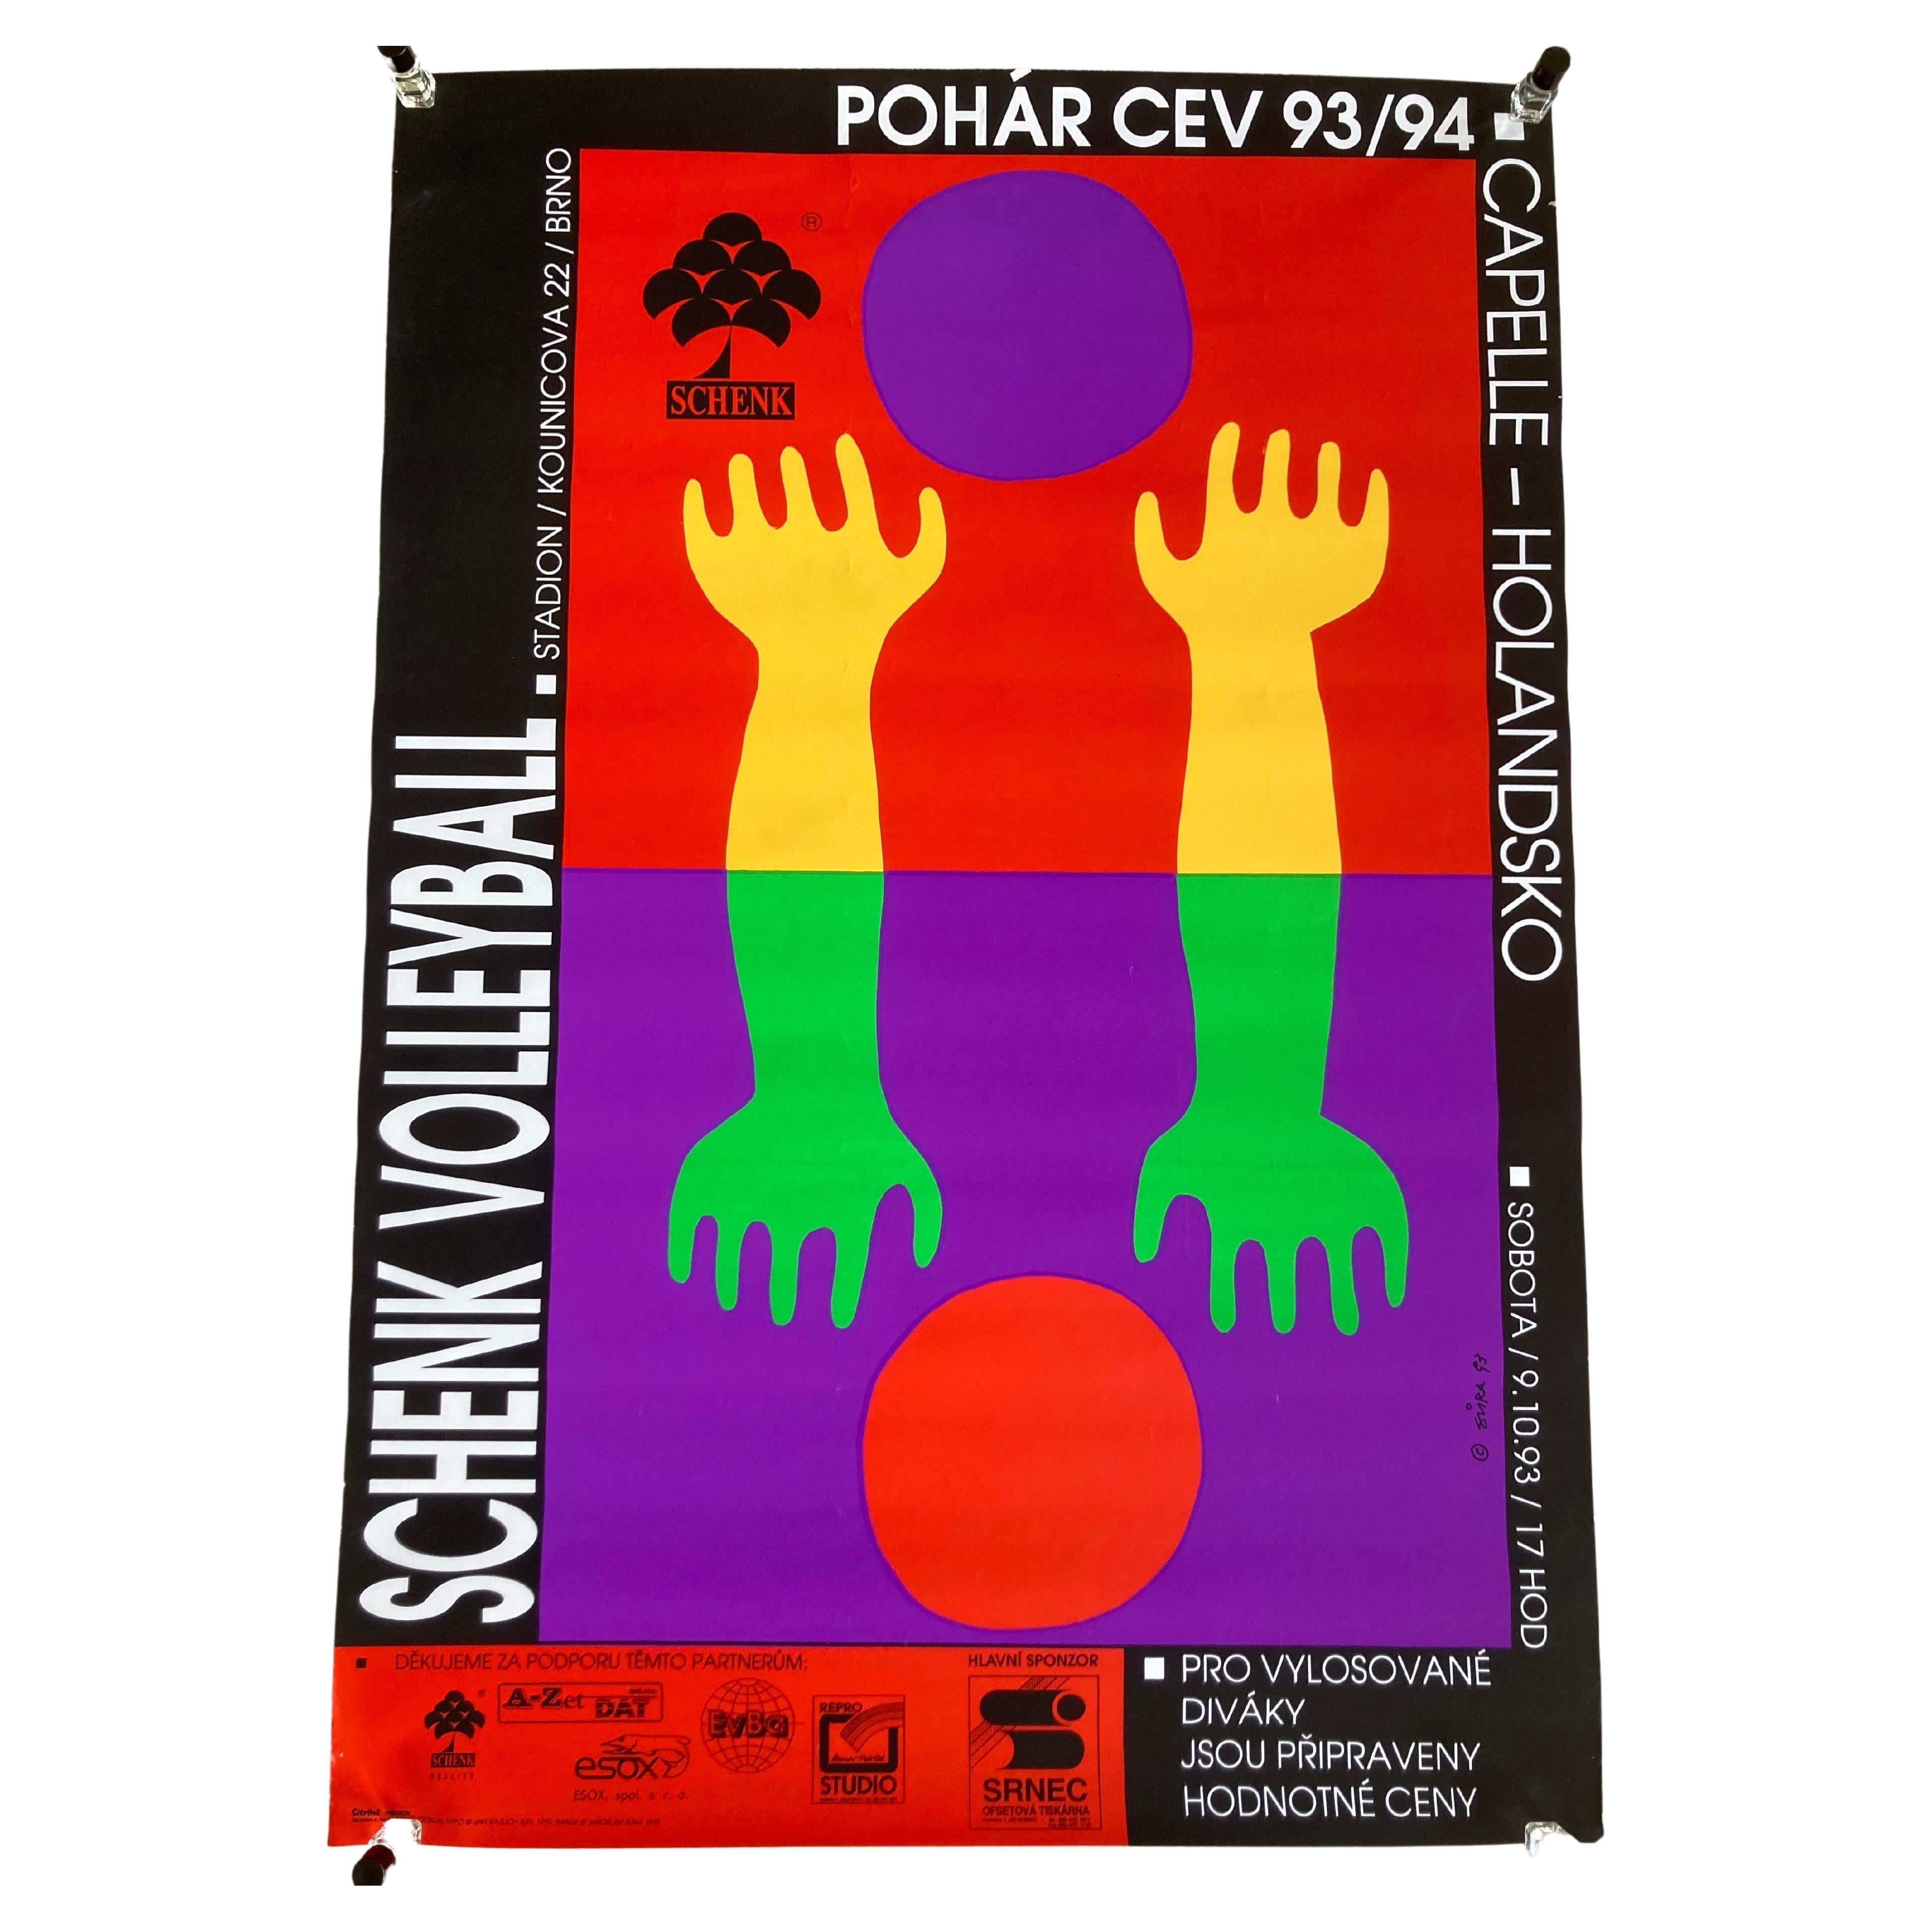 Original Sport Design Volleyball Poster, 1993 / Czechoslovakia